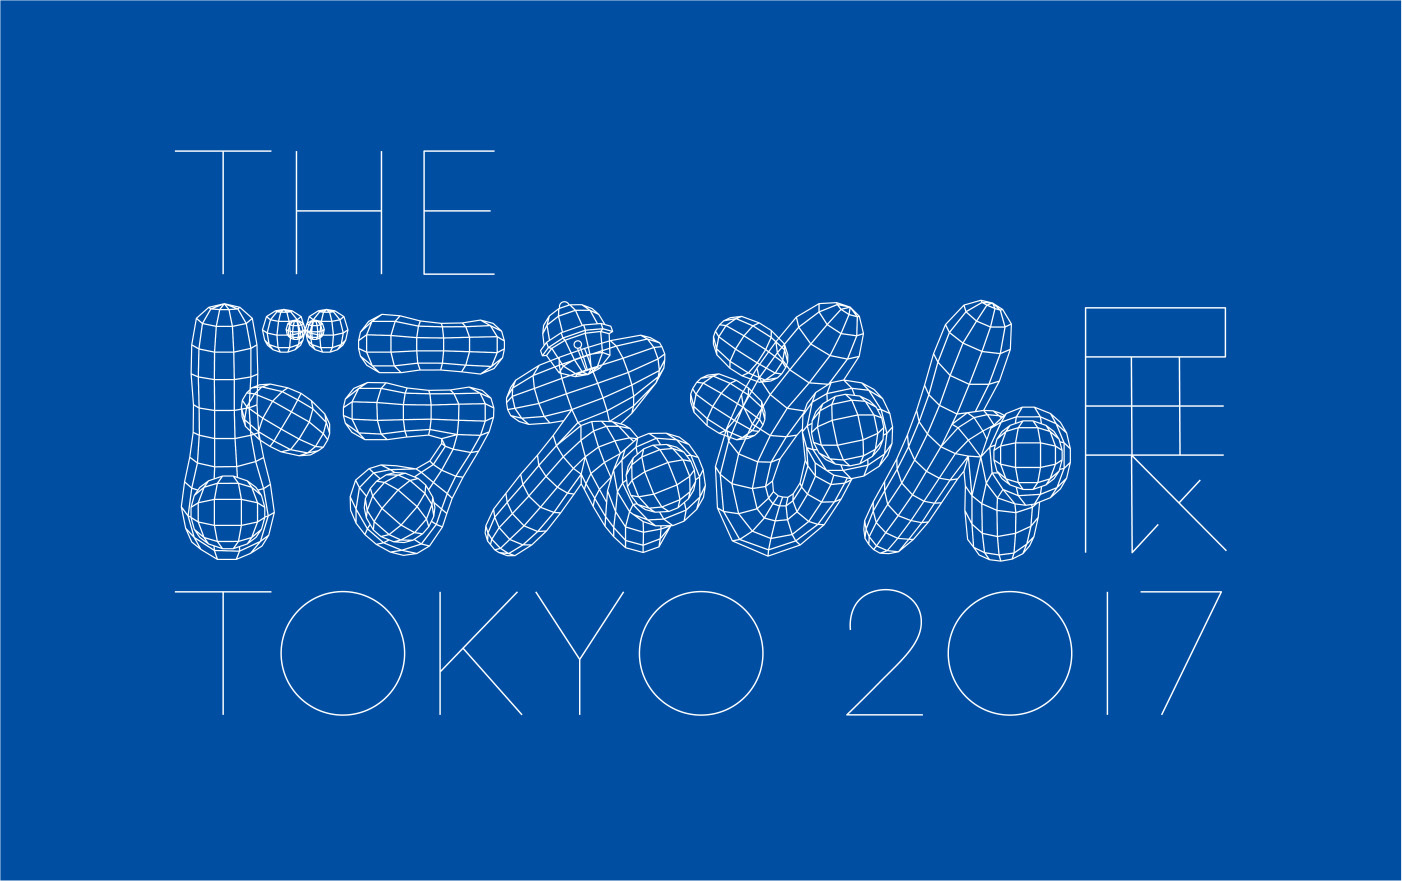 『THE ドラえもん展 TOKYO 2017』ロゴ